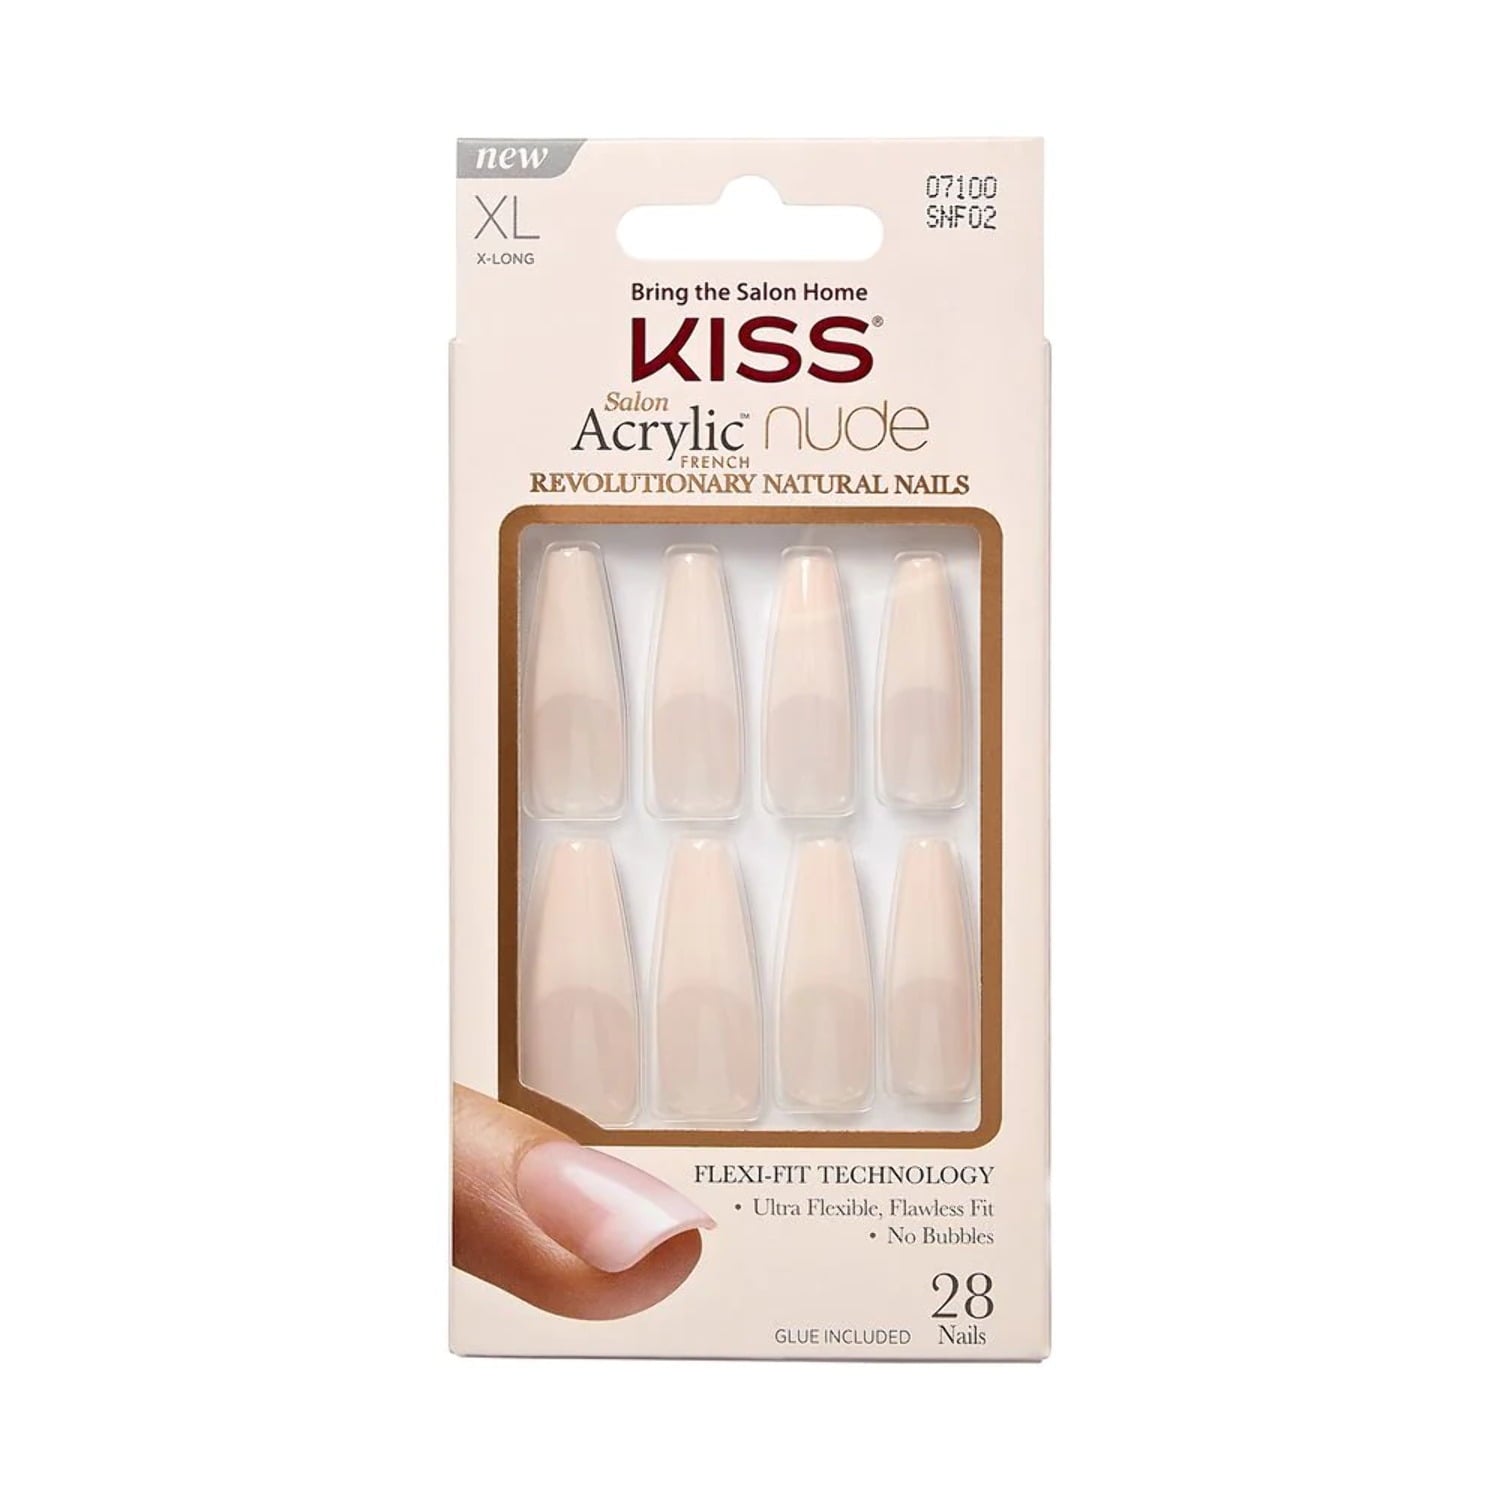 Kiss Salon Acrylic French Nude Nails - Lie Again, 0.07 Oz (SNF02)